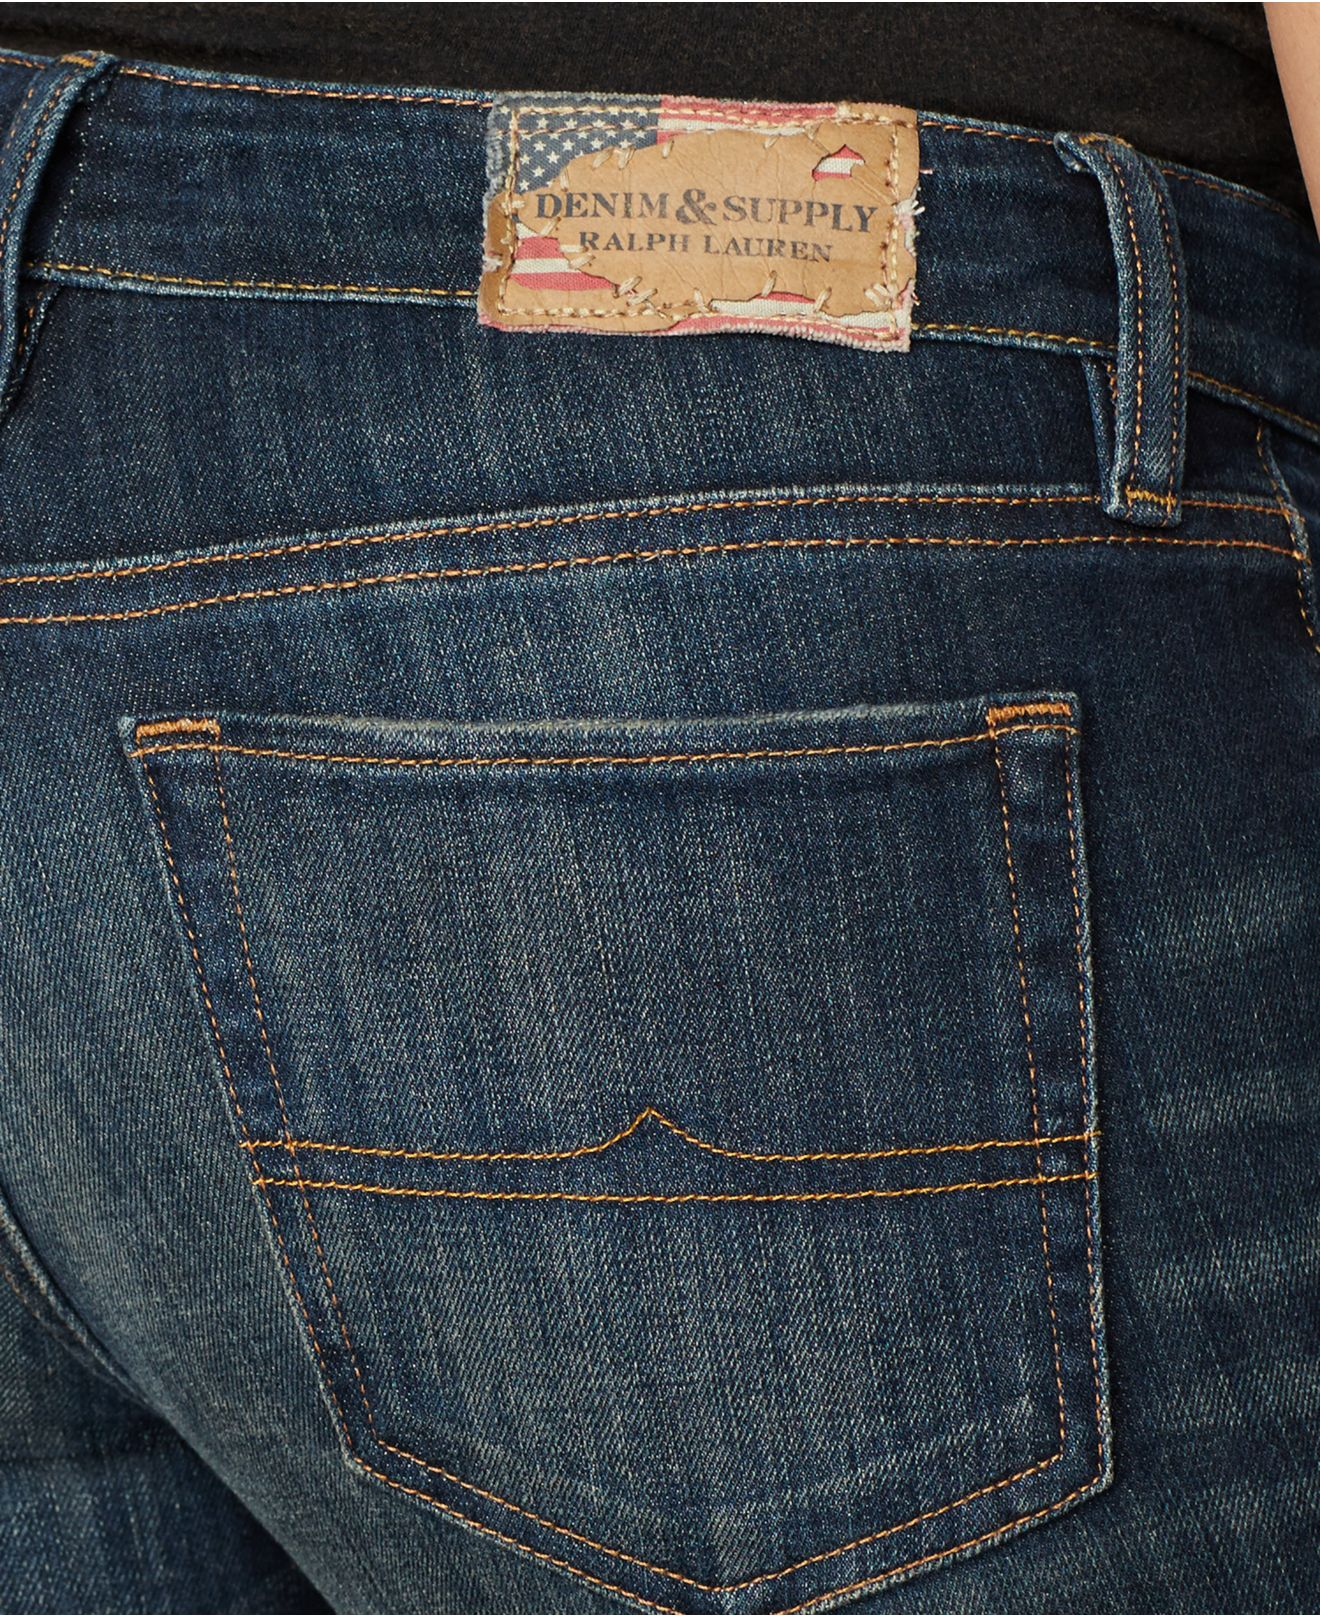 Lyst - Denim & Supply Ralph Lauren Straight-leg Jeans, Aurora Wash in Blue